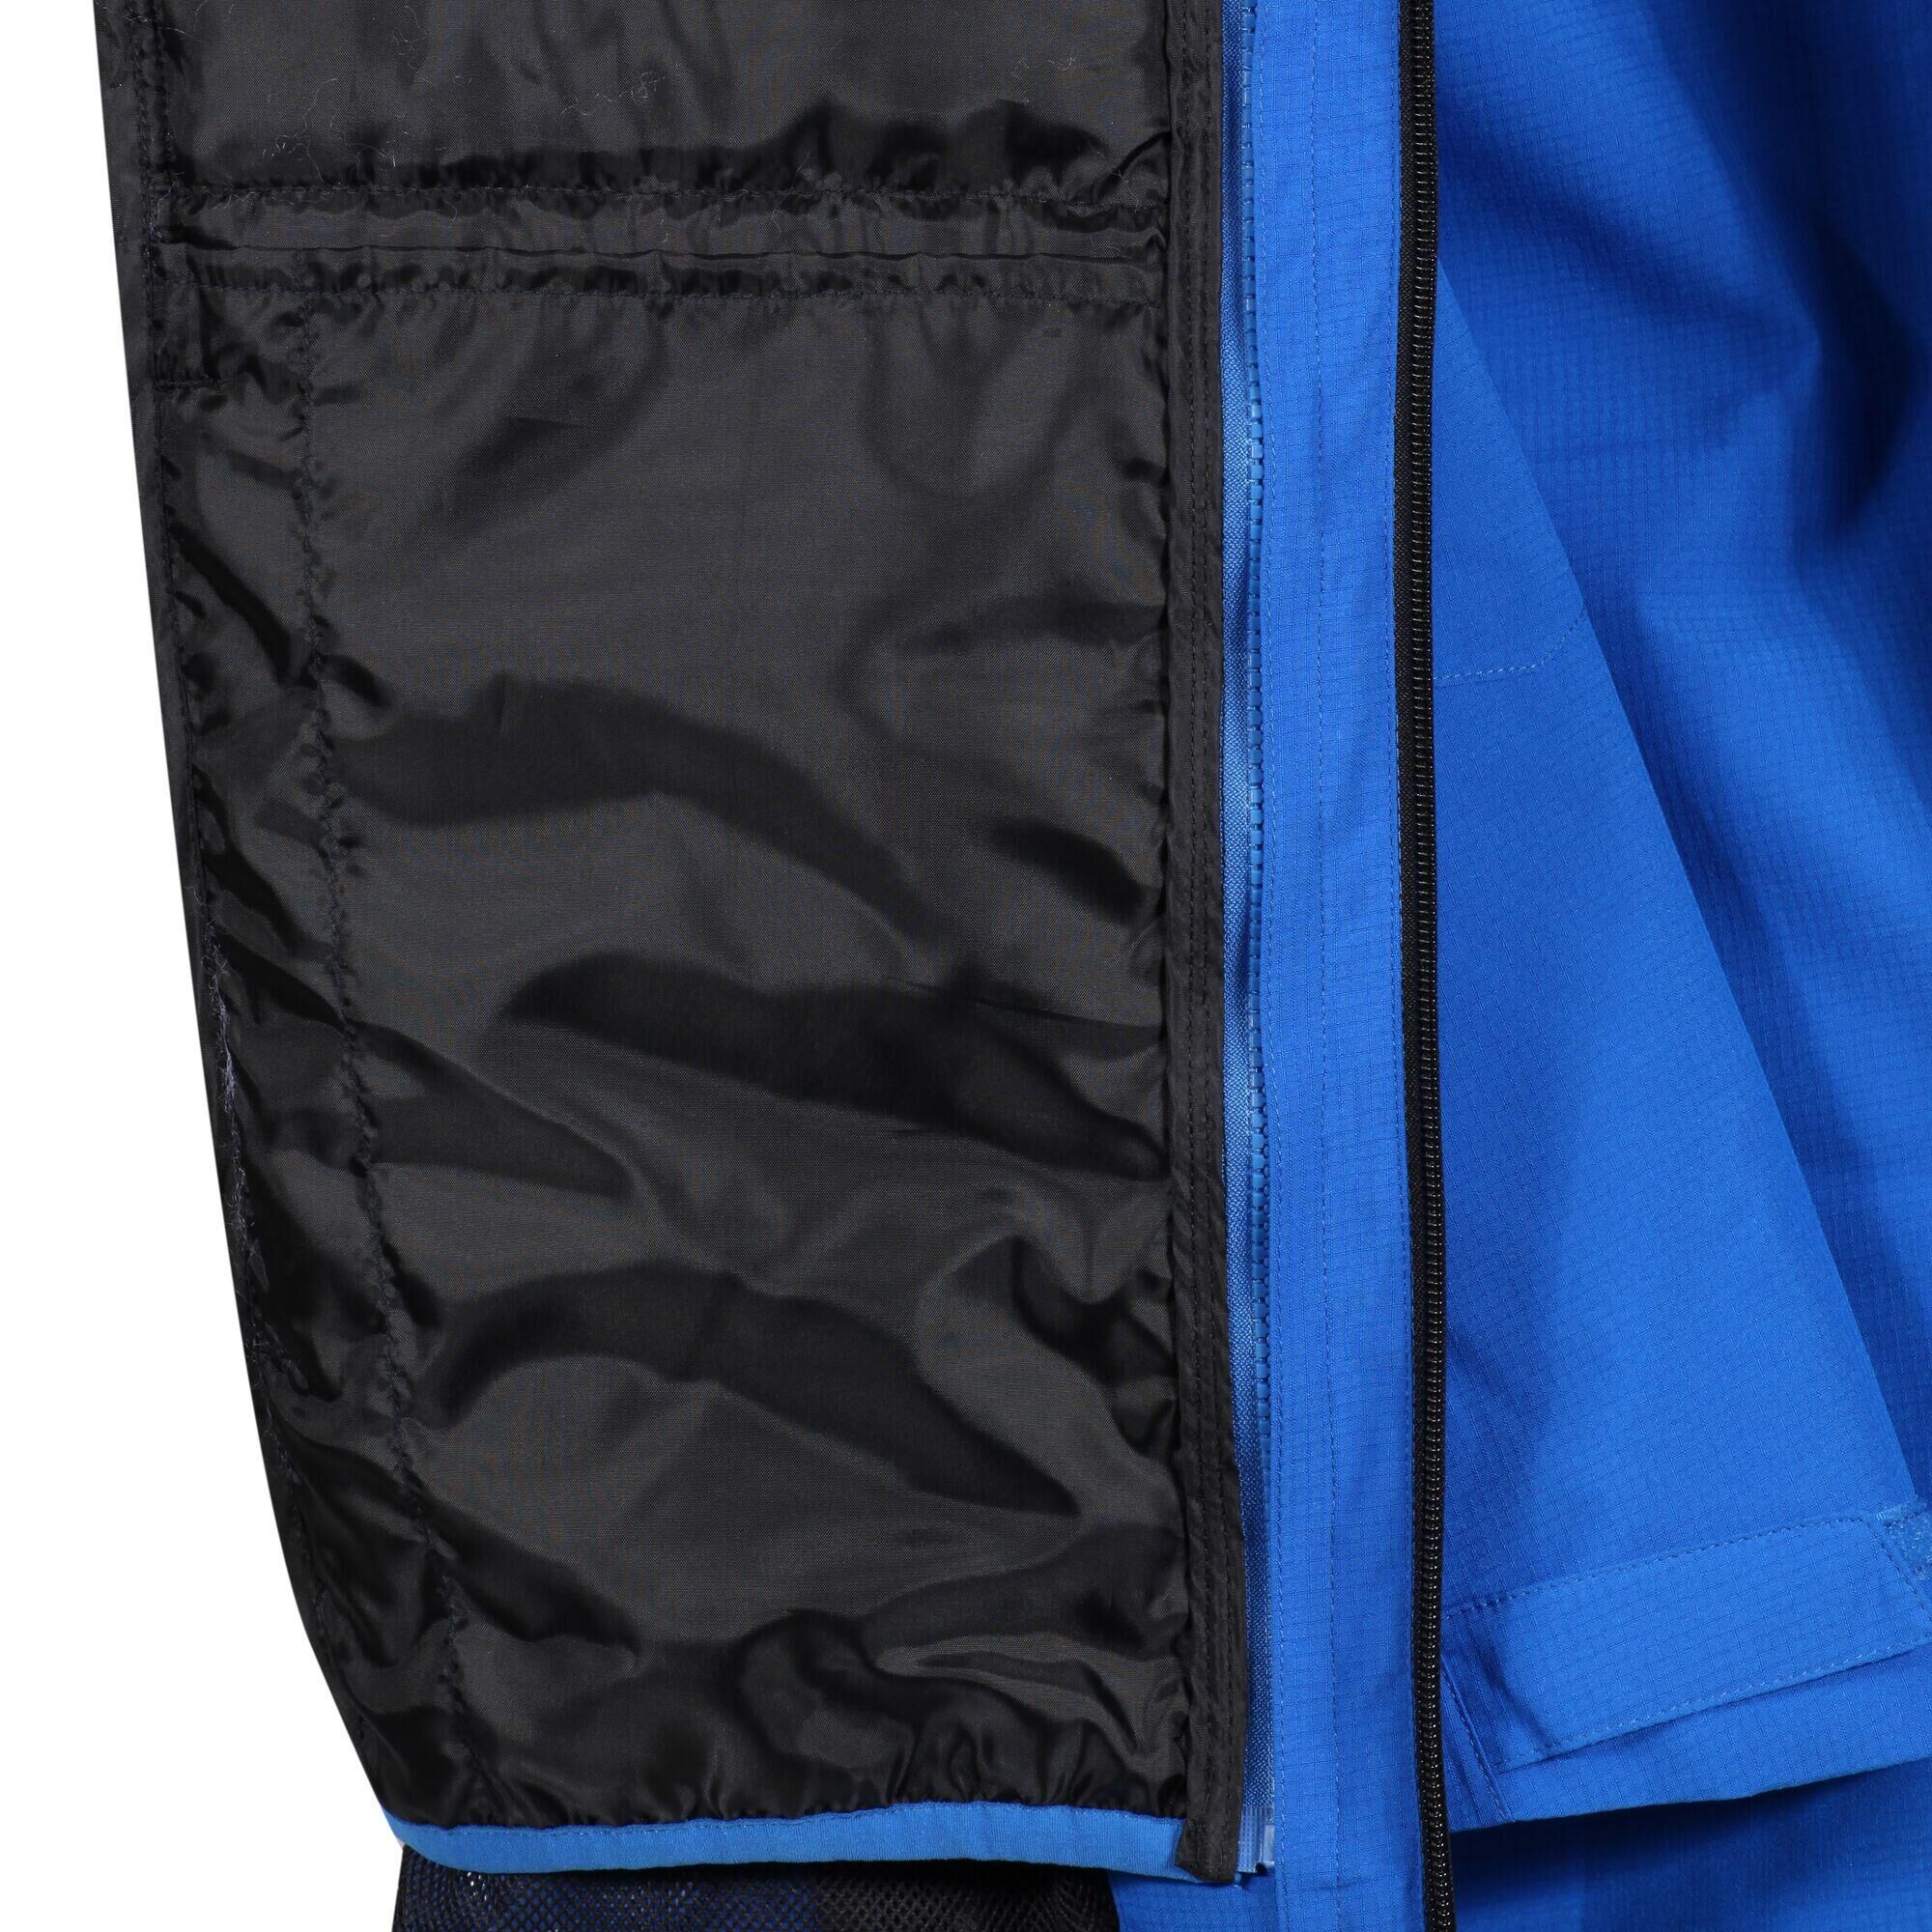 REGATTA Evader III Men's Hiking 3 in 1 Waterproof Jacket - Mid Blue/Black